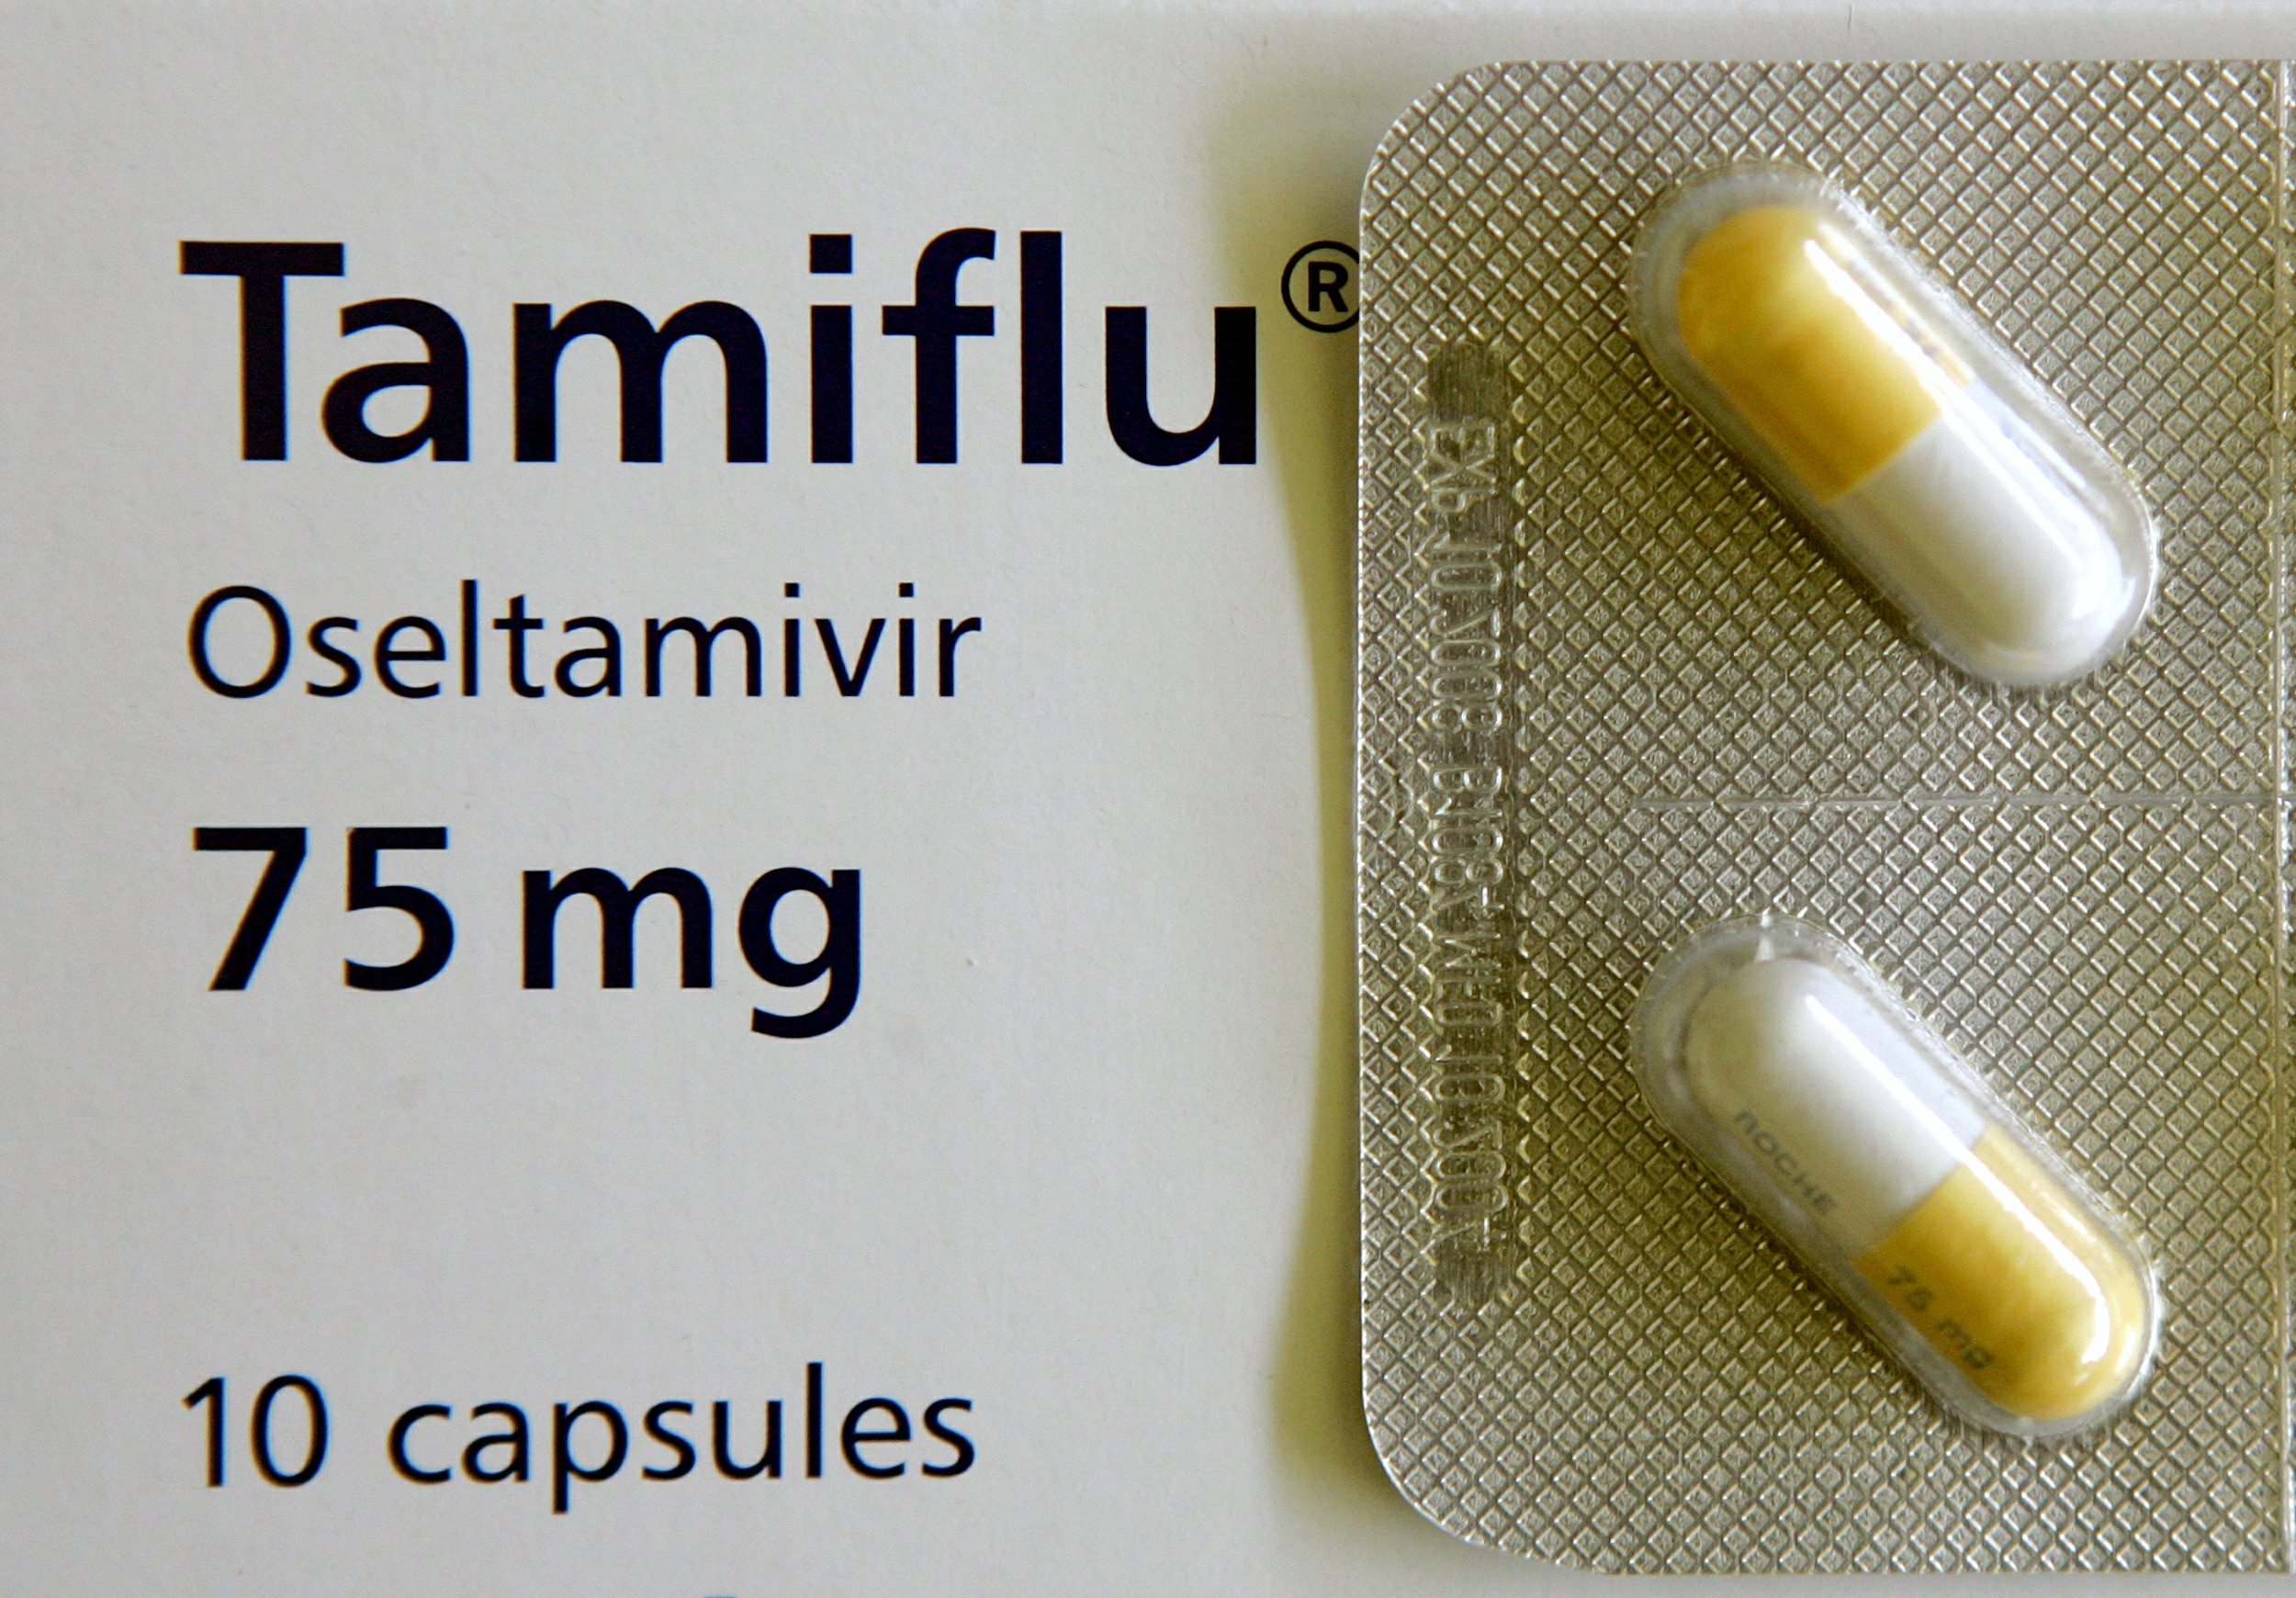 U K Scientists Pan Tamiflu In Debate Over 09 Pandemic Cost The 